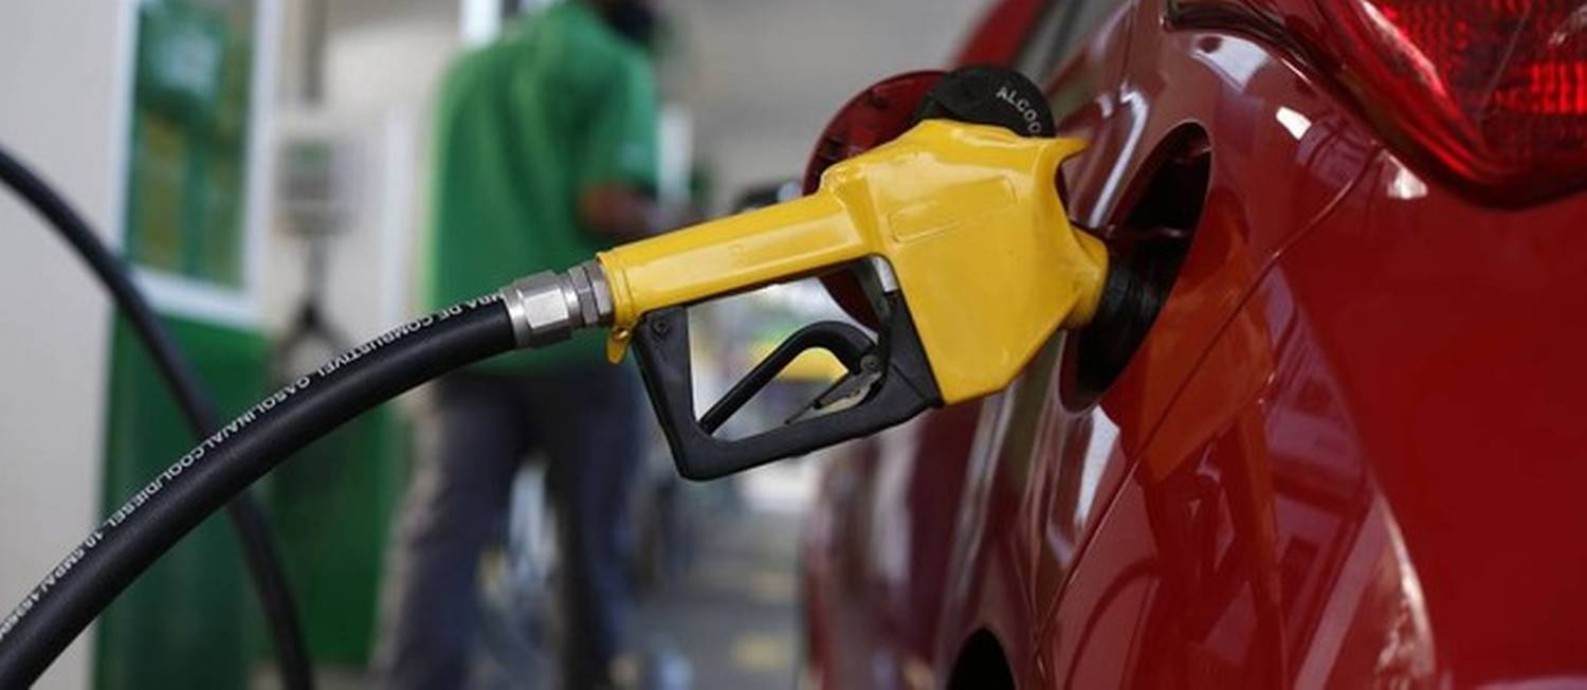 A gasolina já passa de R$ 7 em alguns postos Foto: Fábio Rossi